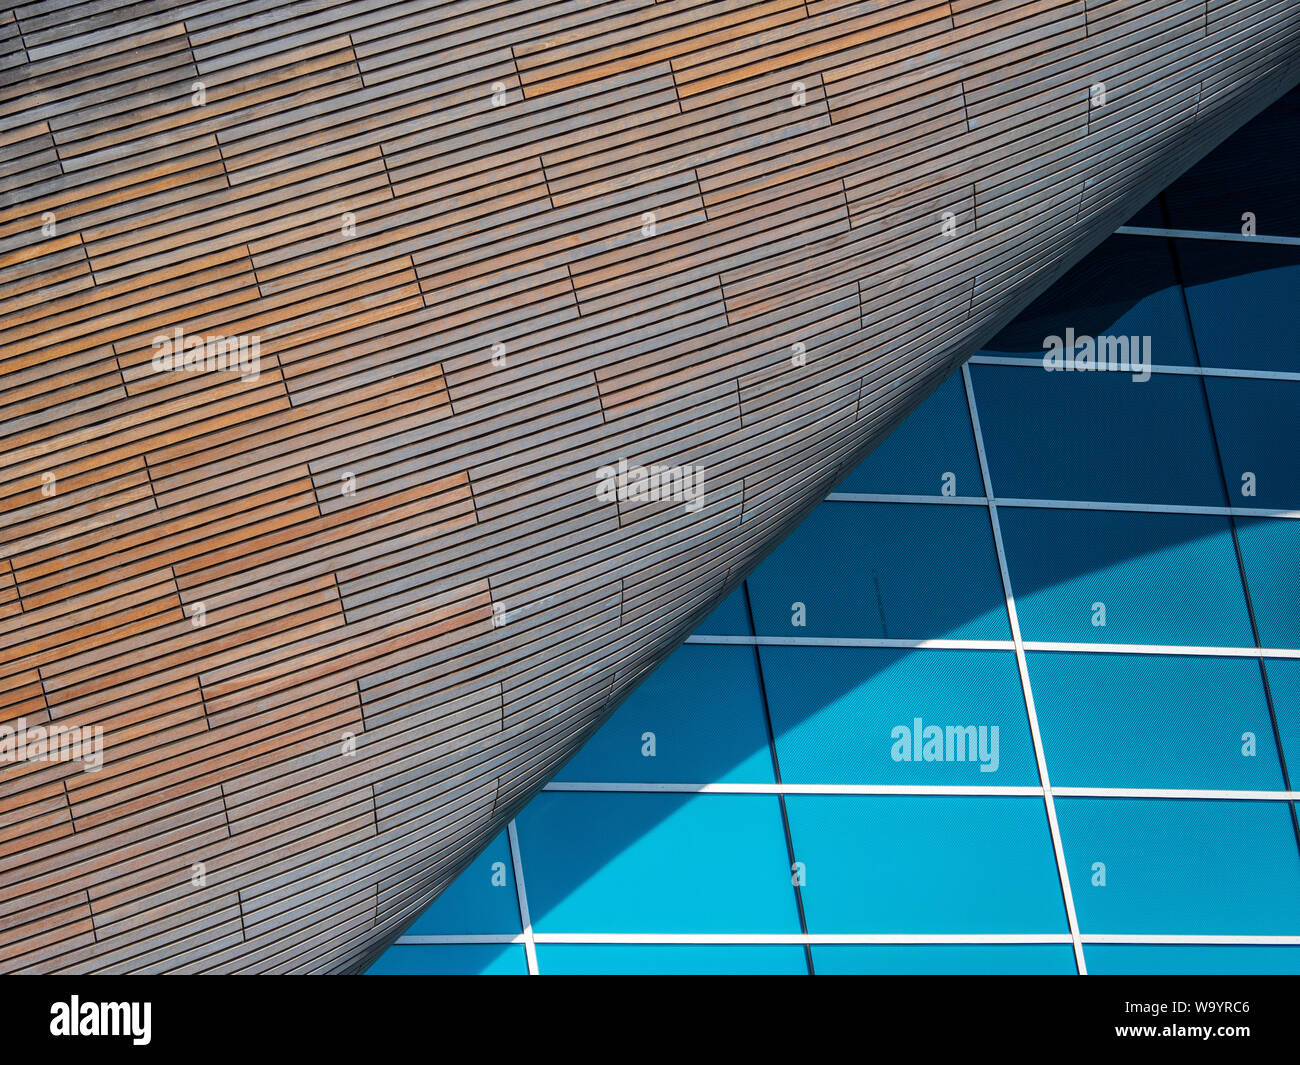 Centre aquatique de Londres - détails de conception de piscines pour les Jeux Olympiques Jeux Olympiques 2012 - Design Zaha Hadid Architects. Compl. 2011, coûte £269 millions. Banque D'Images